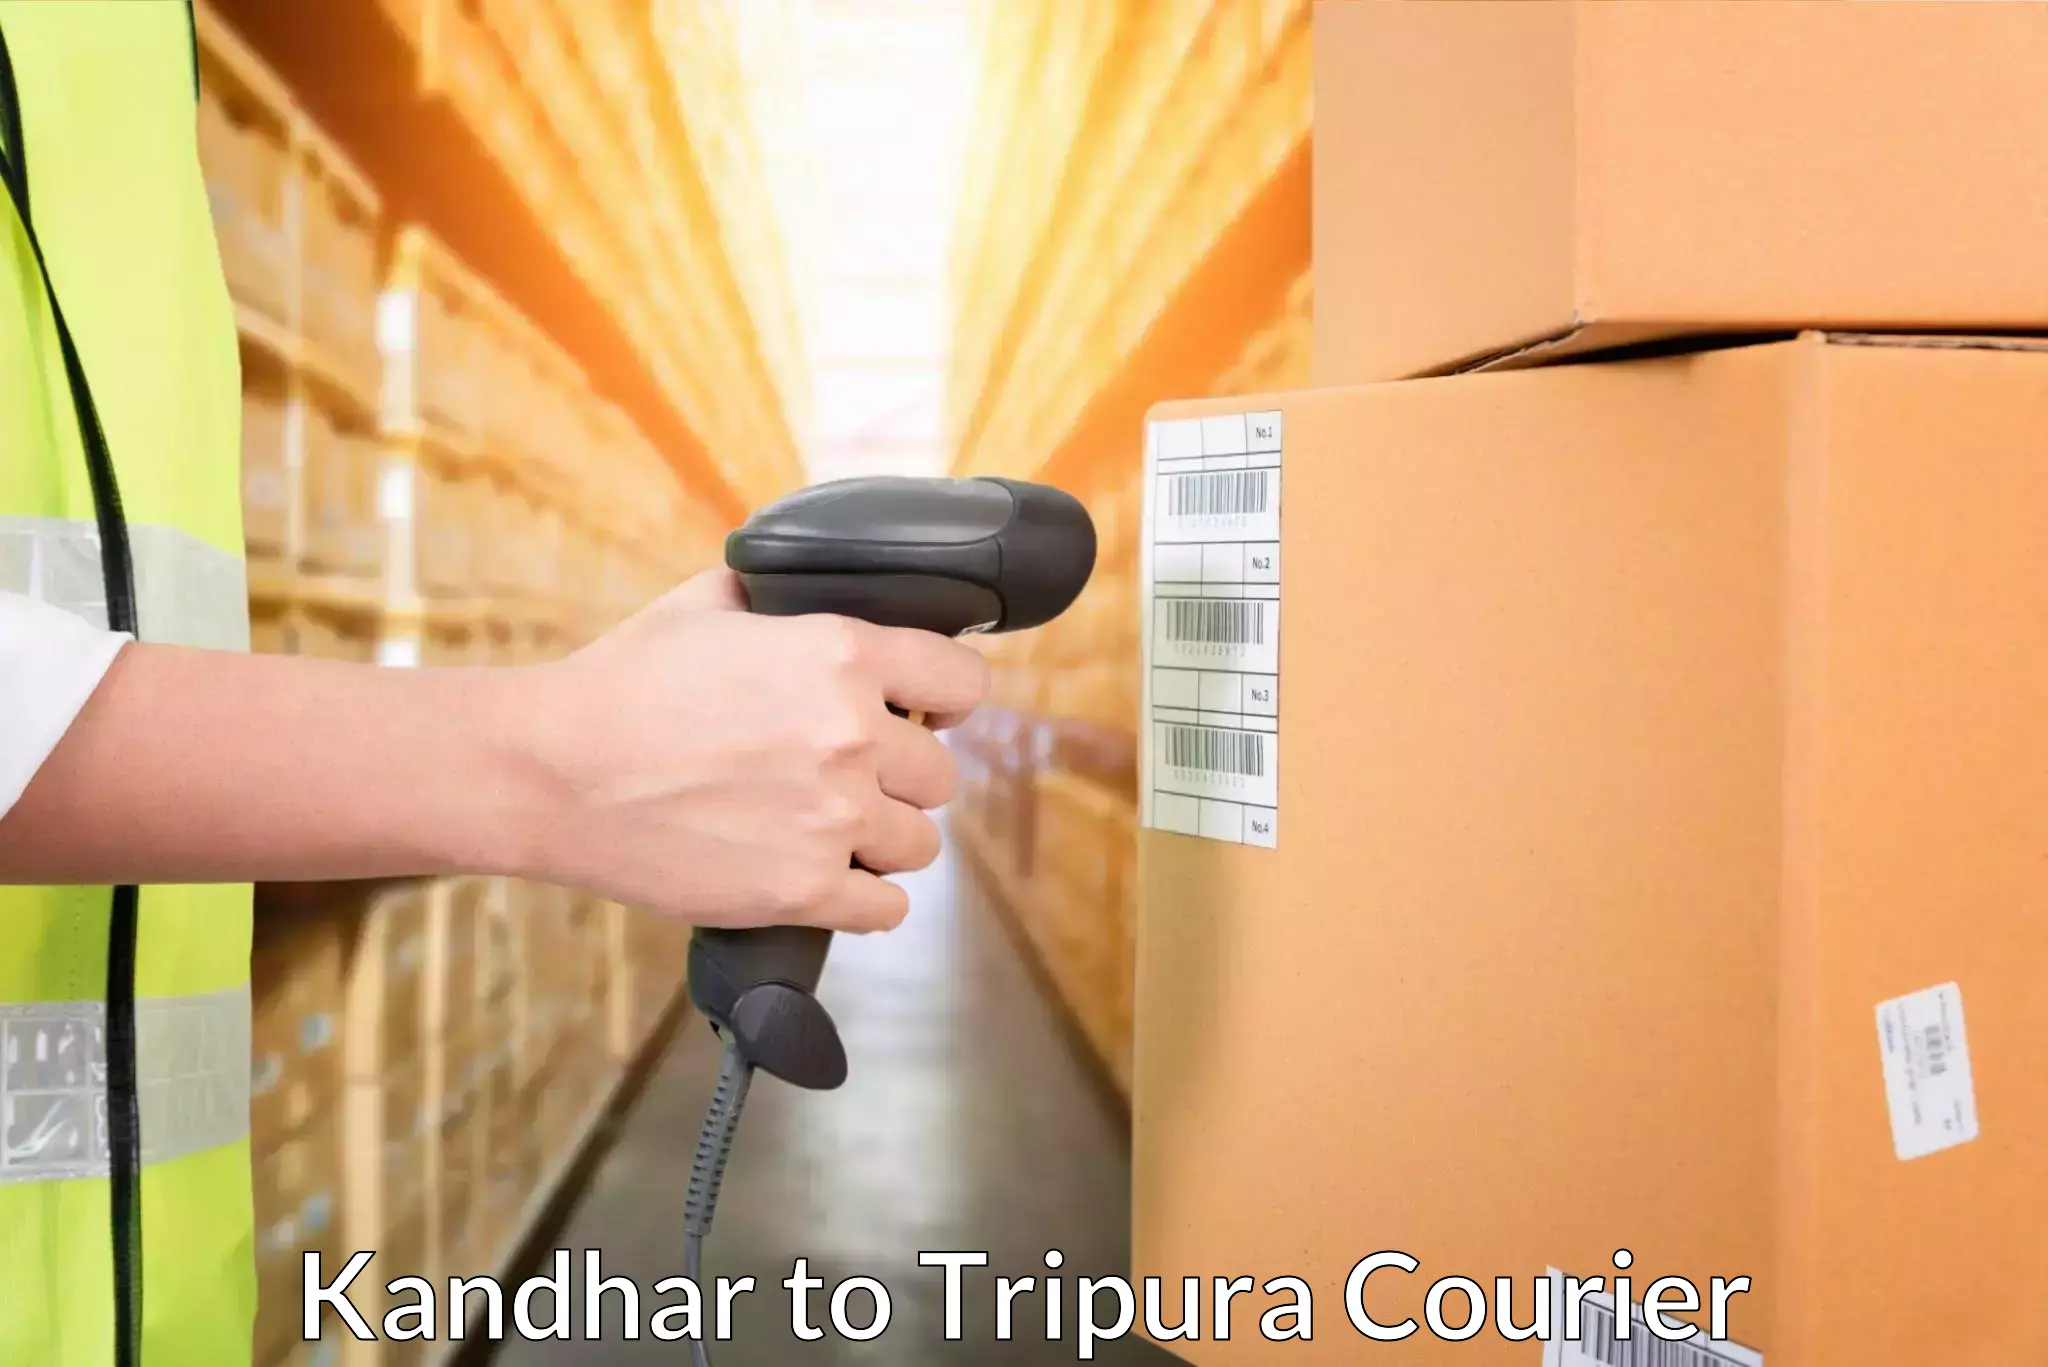 Efficient parcel transport Kandhar to Udaipur Tripura